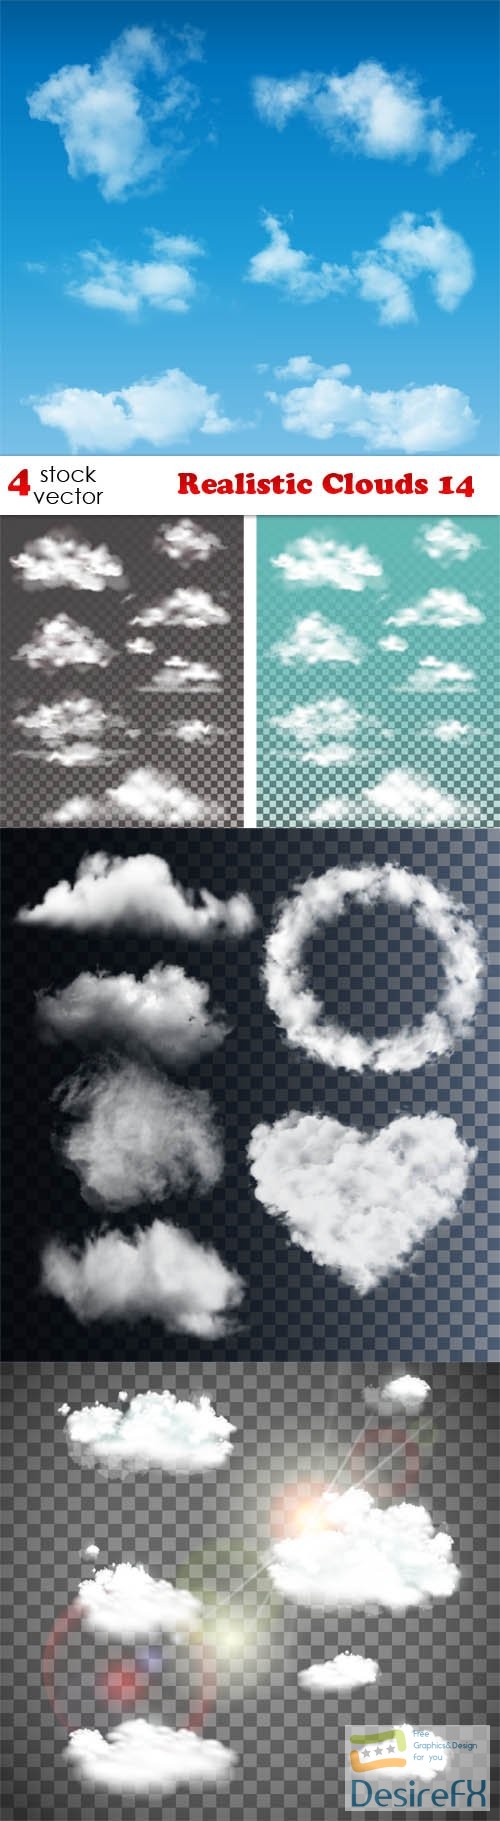 Vectors - Realistic Clouds 14